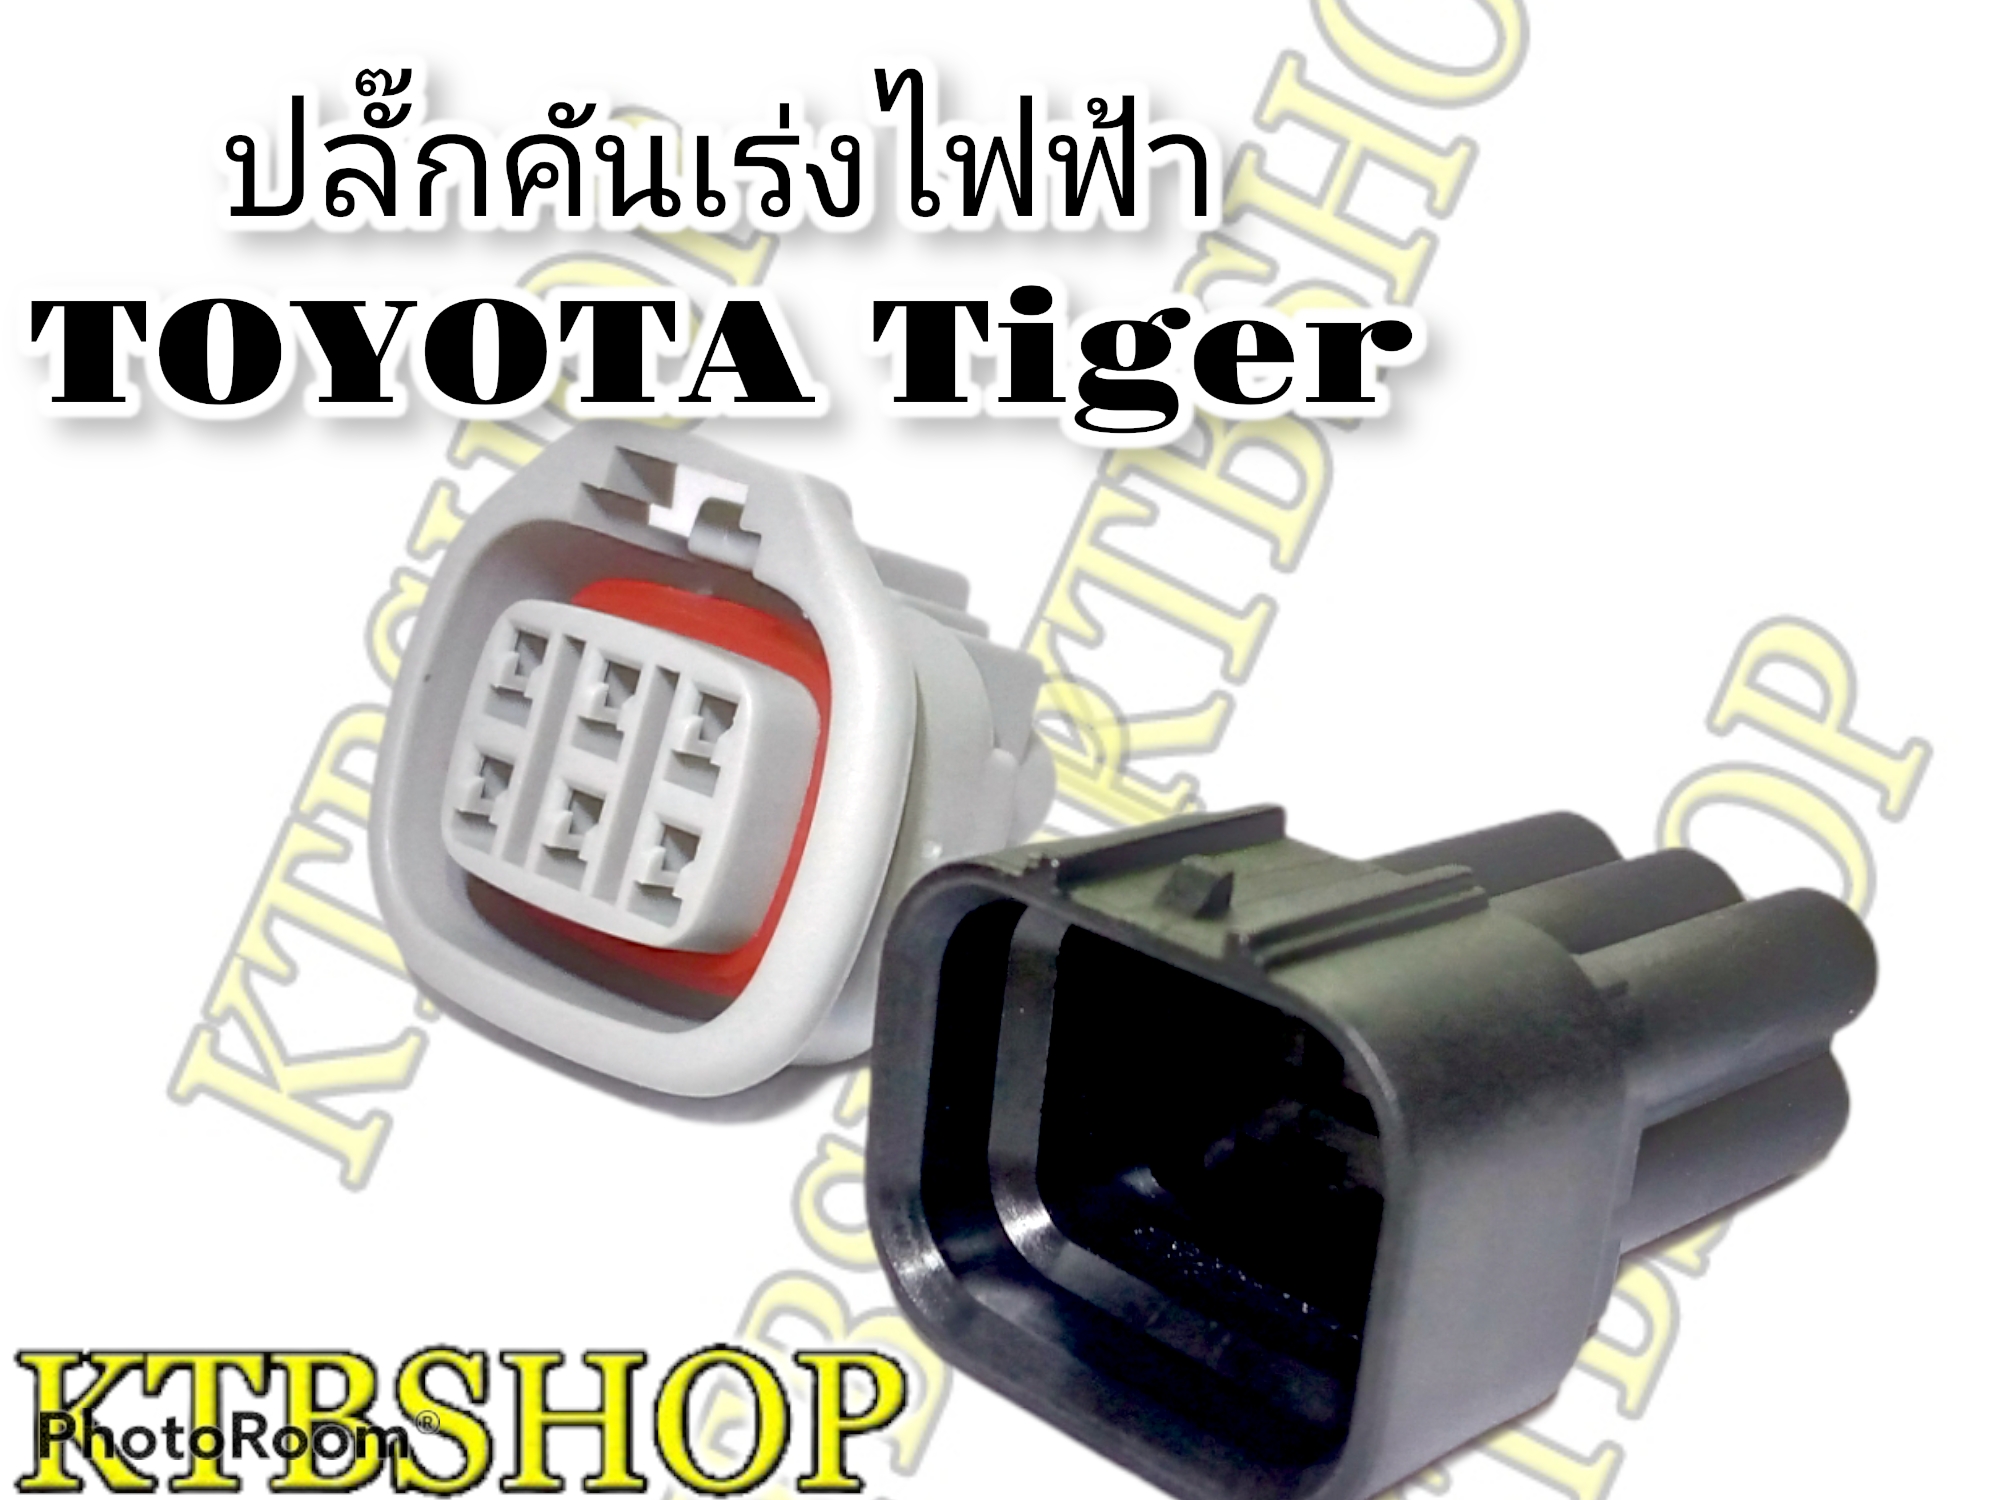 ปลั๊ก คันเร่งไฟฟ้า Toyota Tiger D4D 6 Pin ผู้+เมีย+ขาพิน+ยางกันน้ำ (ผลิตใหม่)